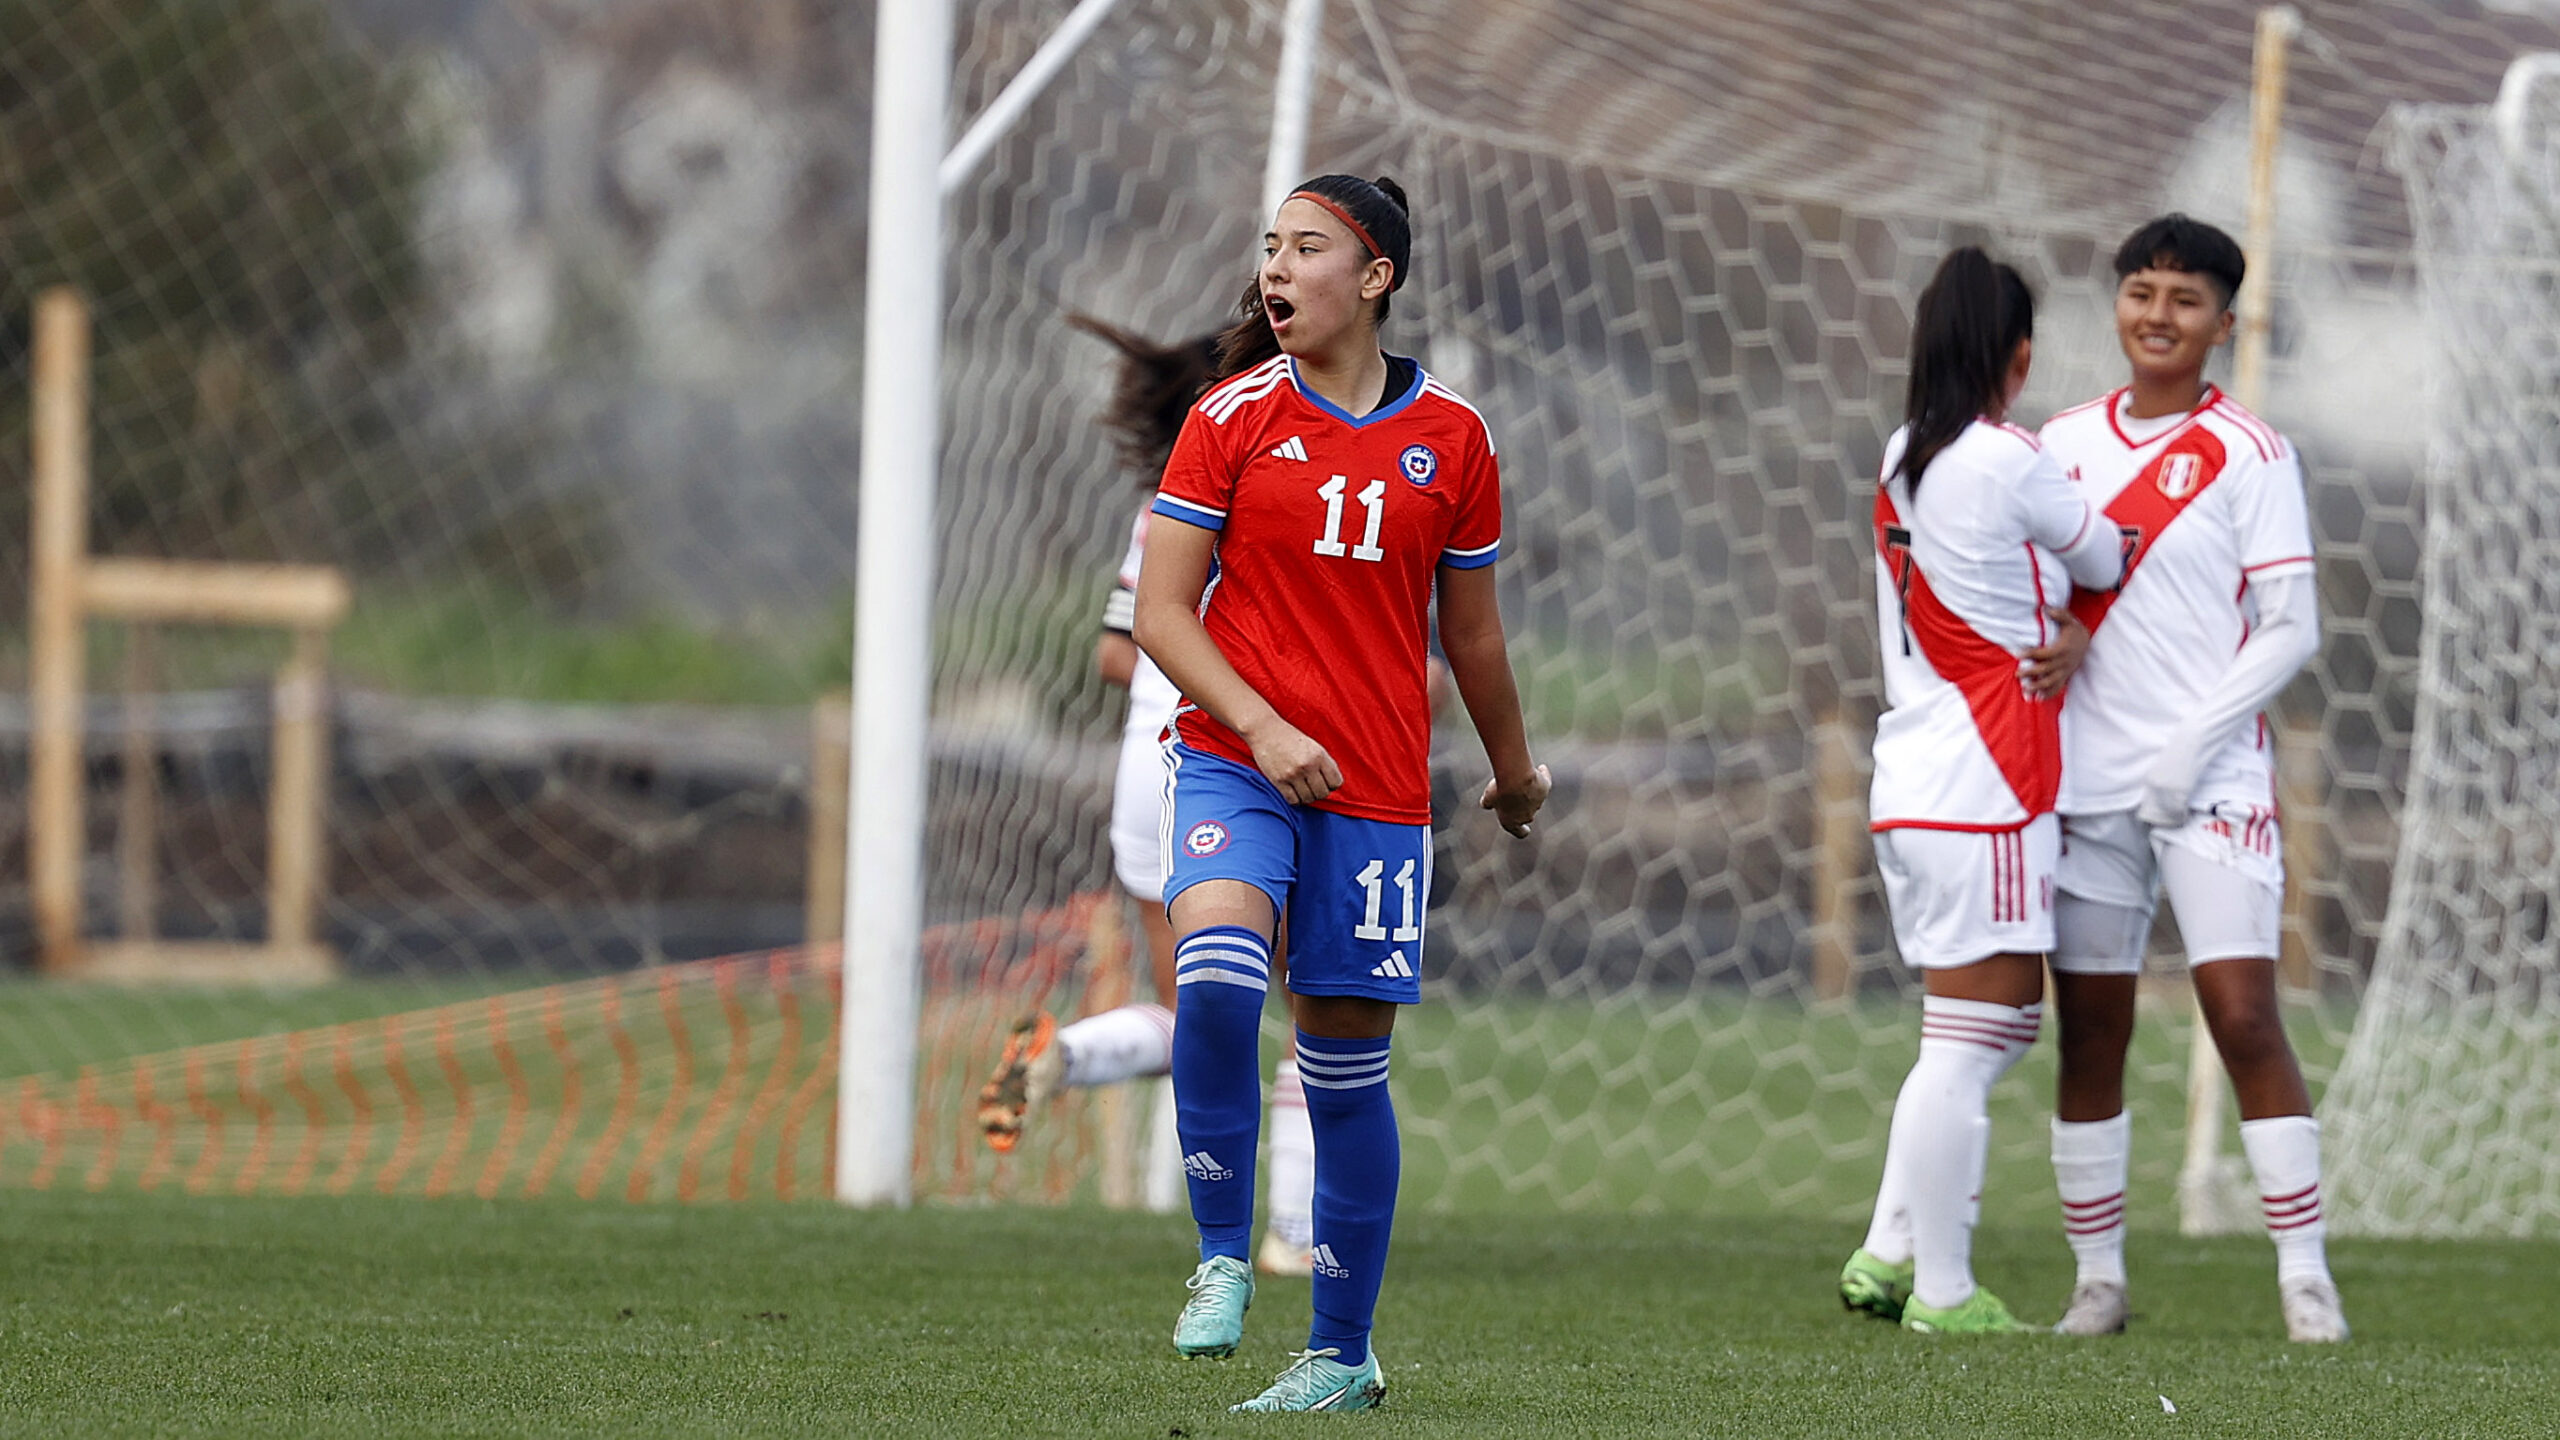 Paloma Bustamante y su doblete con La Roja Sub-19: “Me siento orgullosa del equipo”